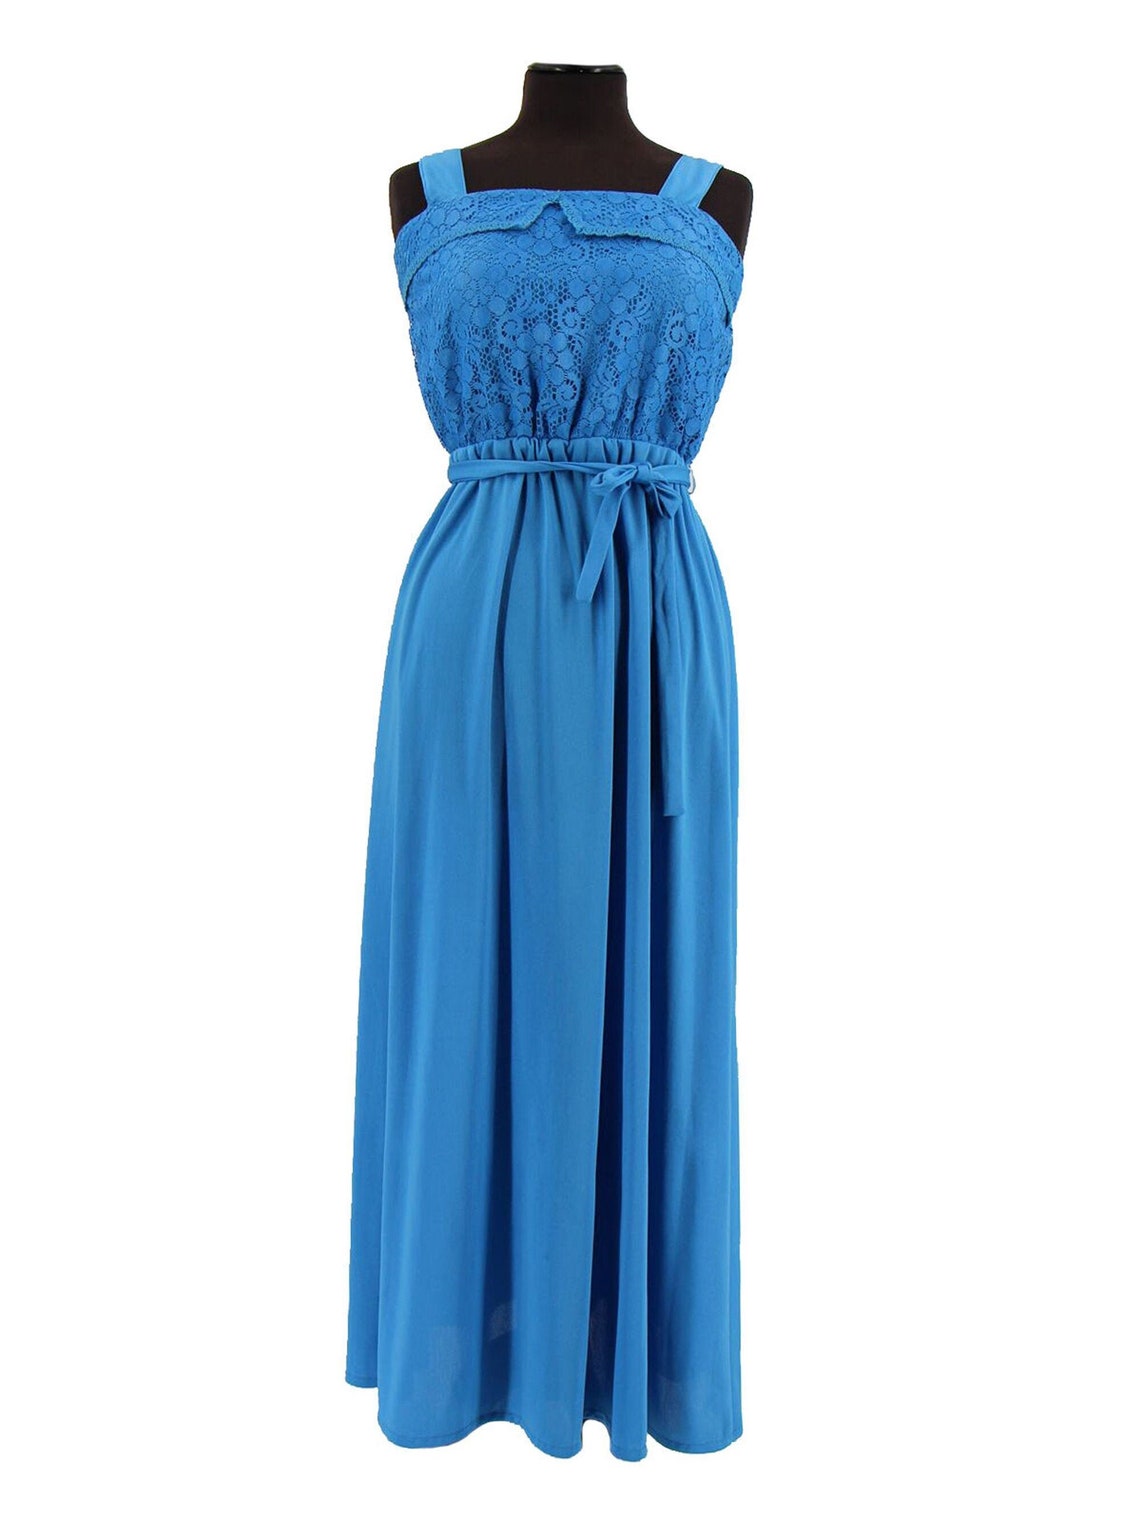 Azure Blue Vintage Maxi Dress Lace Bodice UK 12 | Etsy